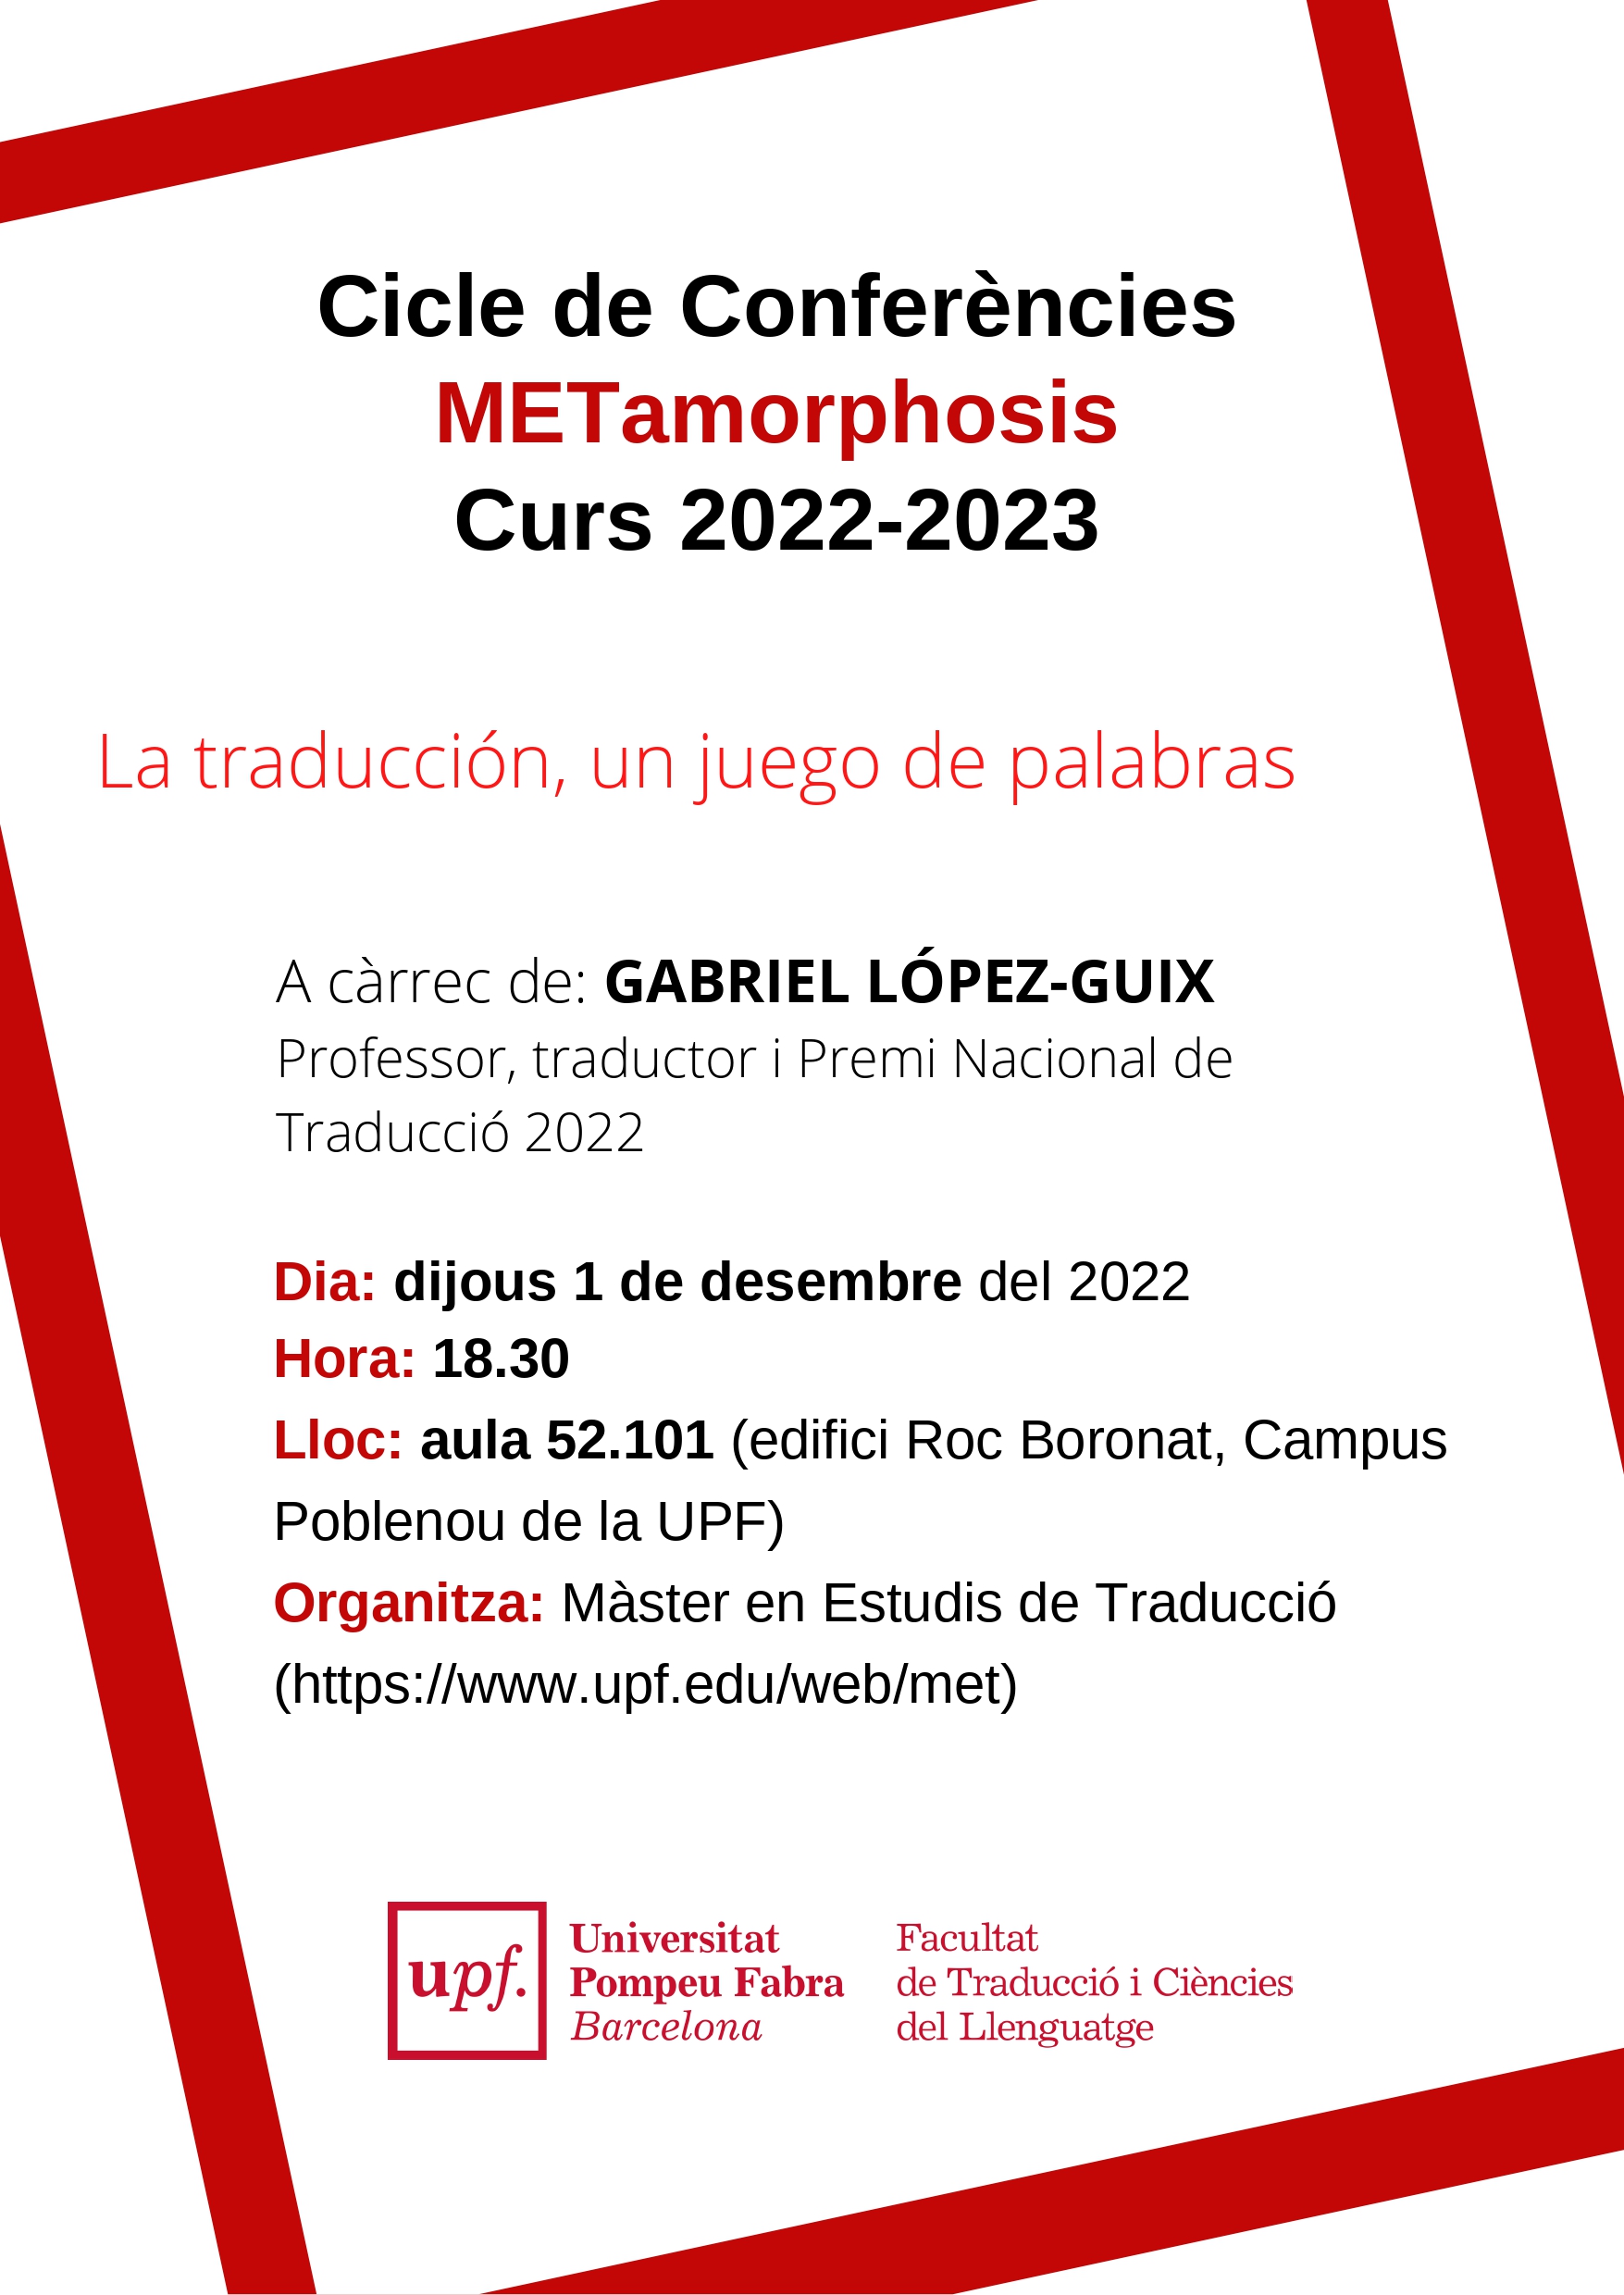 01/12/2022 Cicle de conferències METamorphosis, a càrrec de Gabriel López-Guix